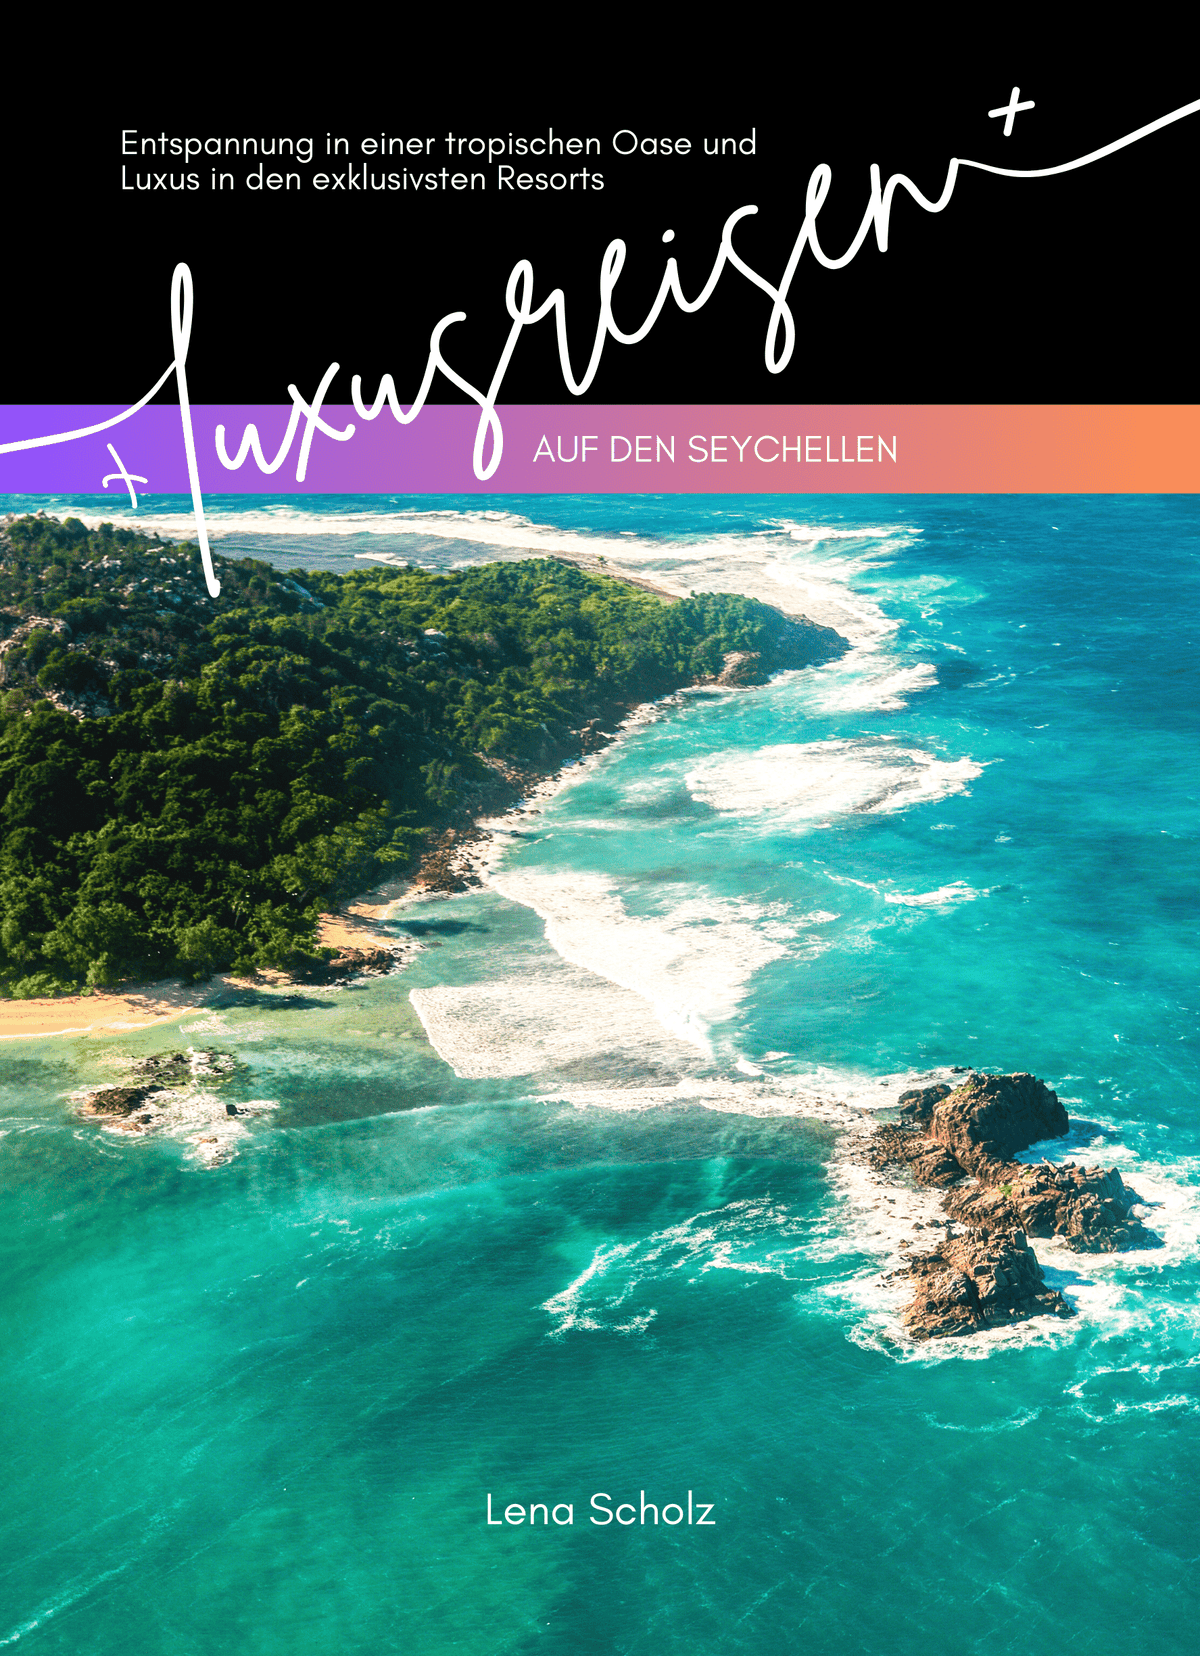 Luxusreisen auf den Seychellen